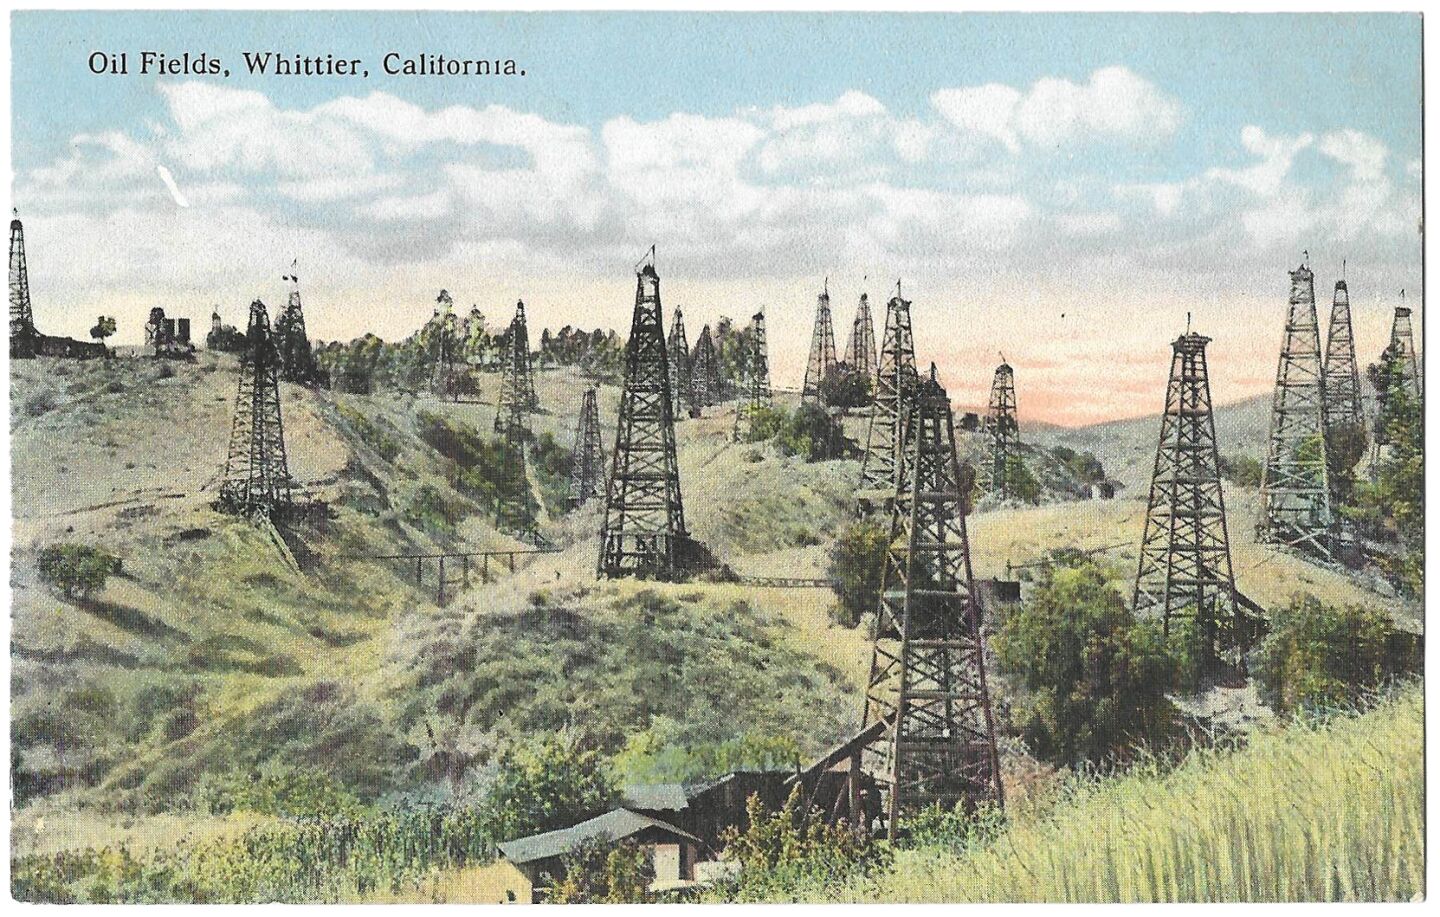 oilwells_whittier_postcard-front-crop.jpg